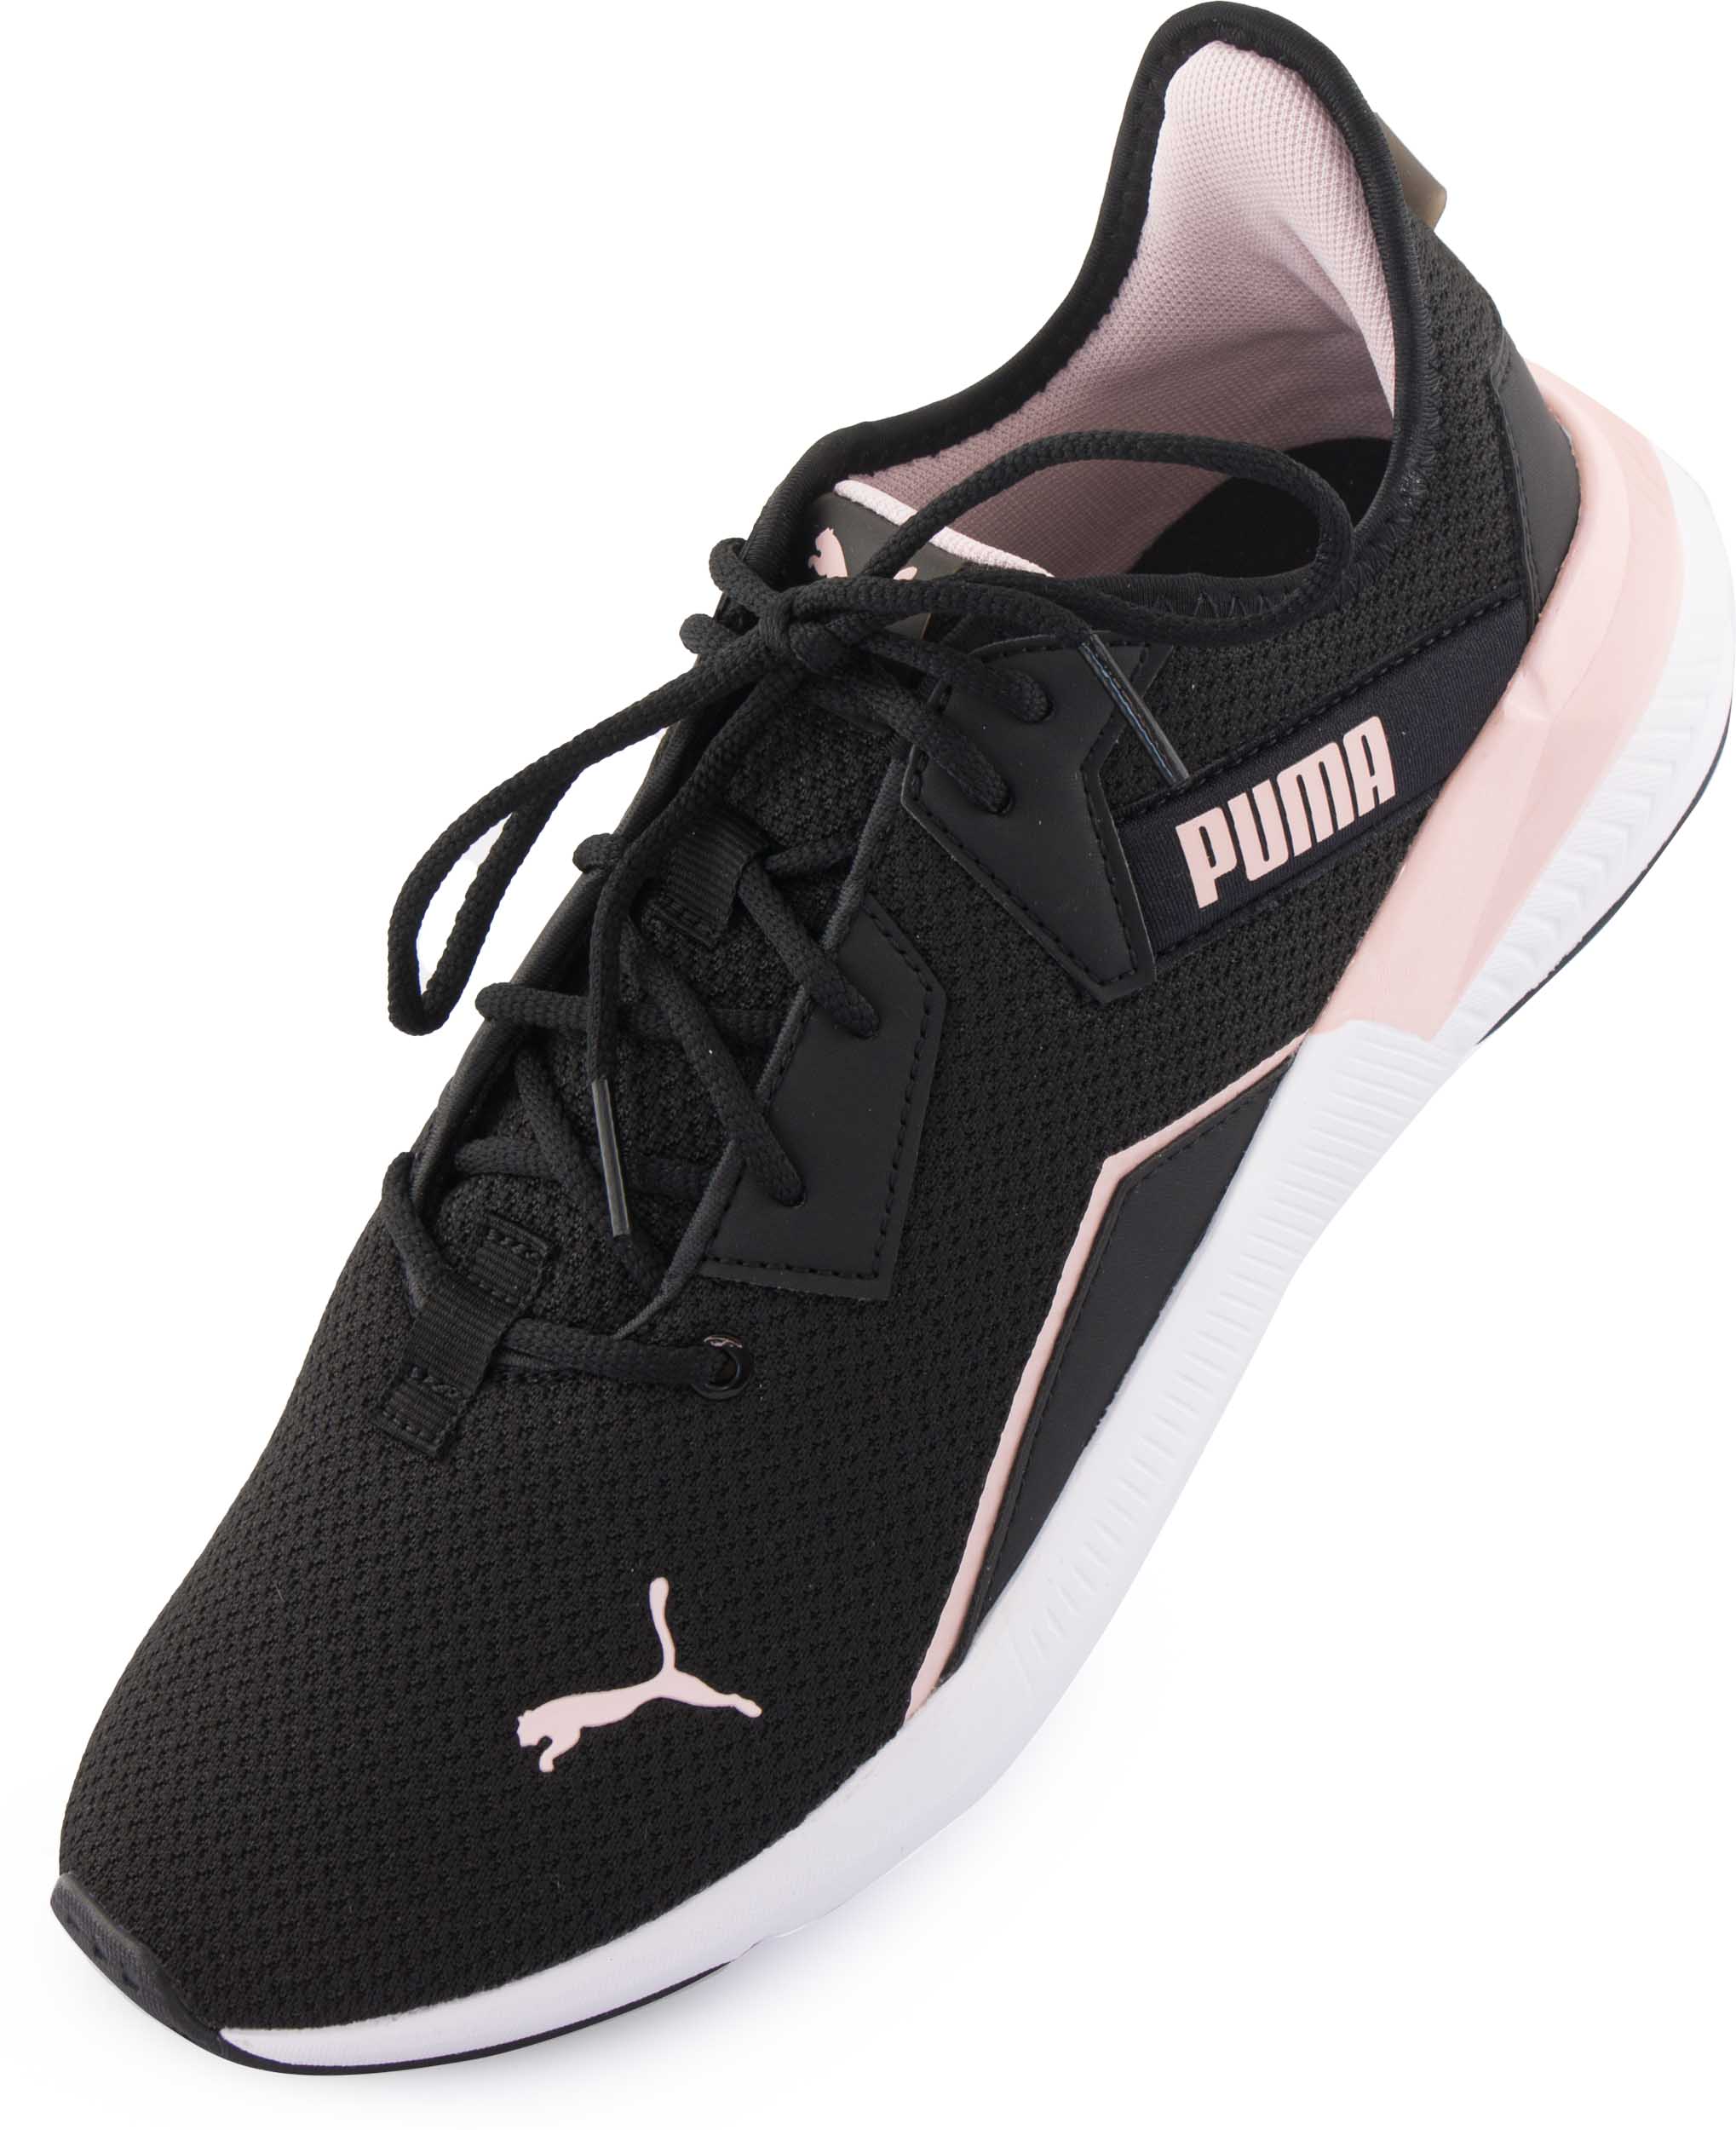 Dámské sportovní boty Puma Wms Platinum Shimmer Black Lotus|39